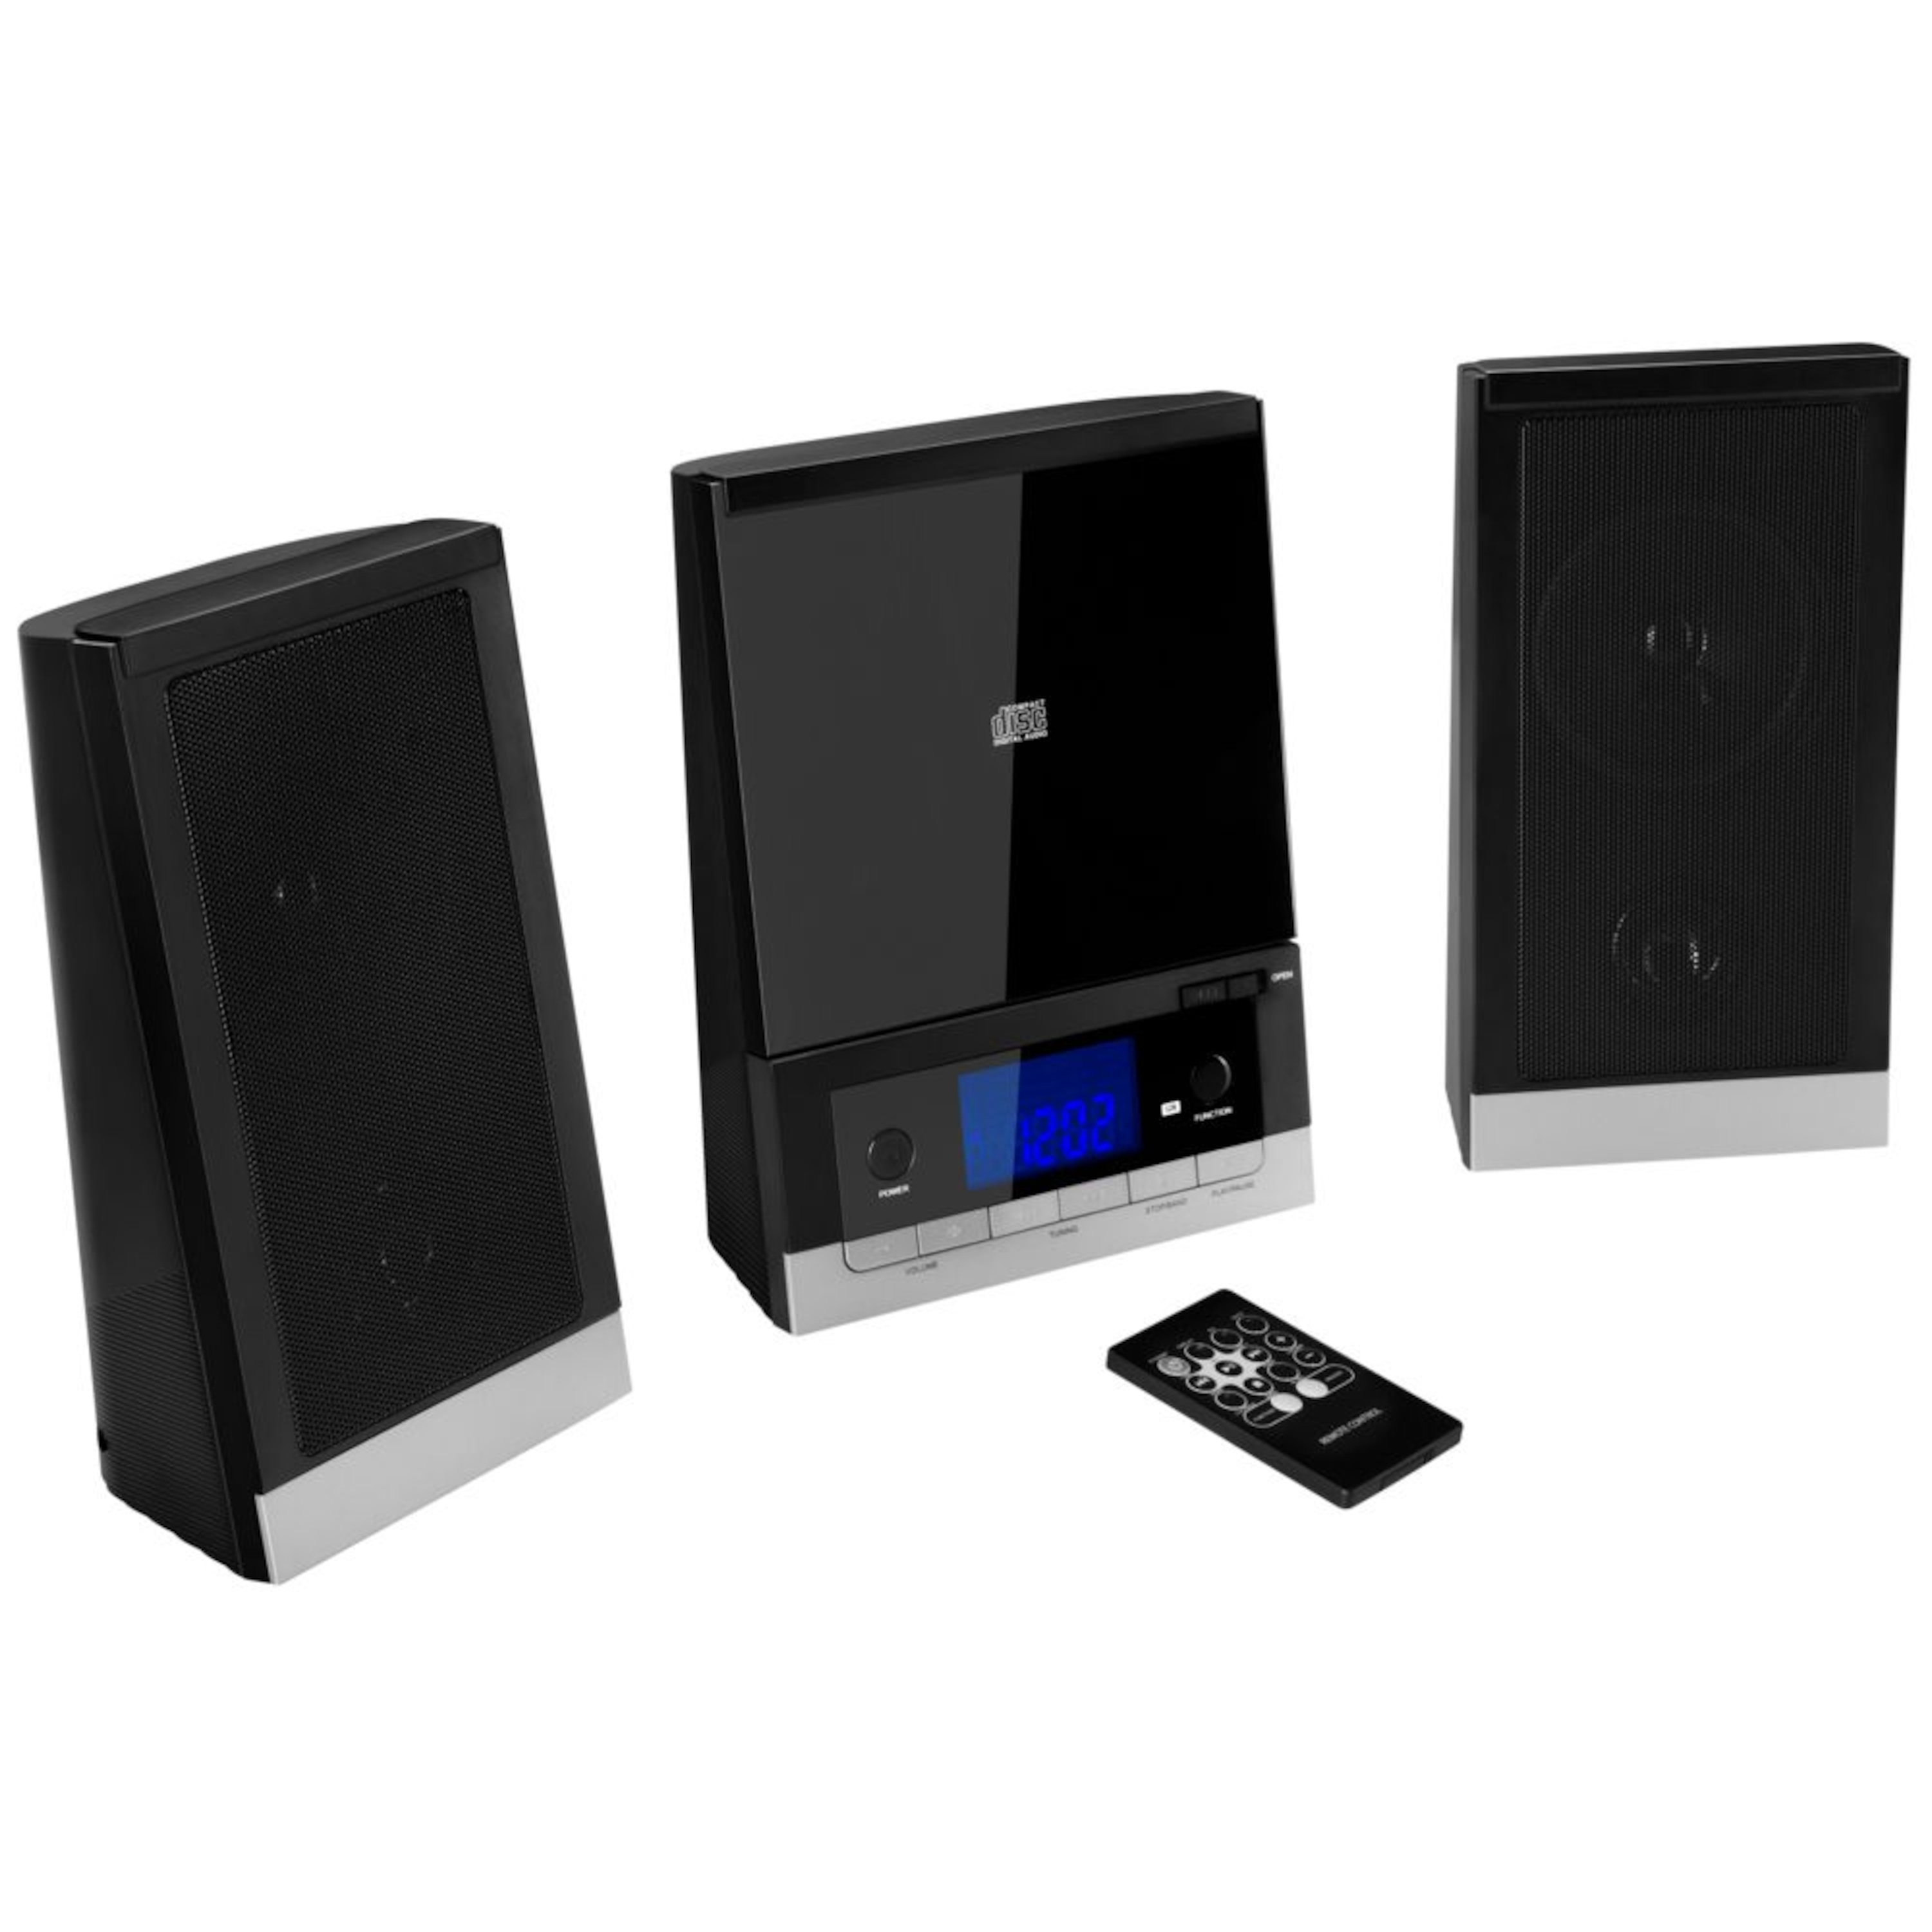 MEDION® LIFE® E64704 Mikro-Audio-System mit CD-Player UKW/MW Stereo Radio, Weckfunktion, 30 Senderspreicher, LC-Display mit blauer Hintergrundbeleuchtung, 2 x 25 Watt